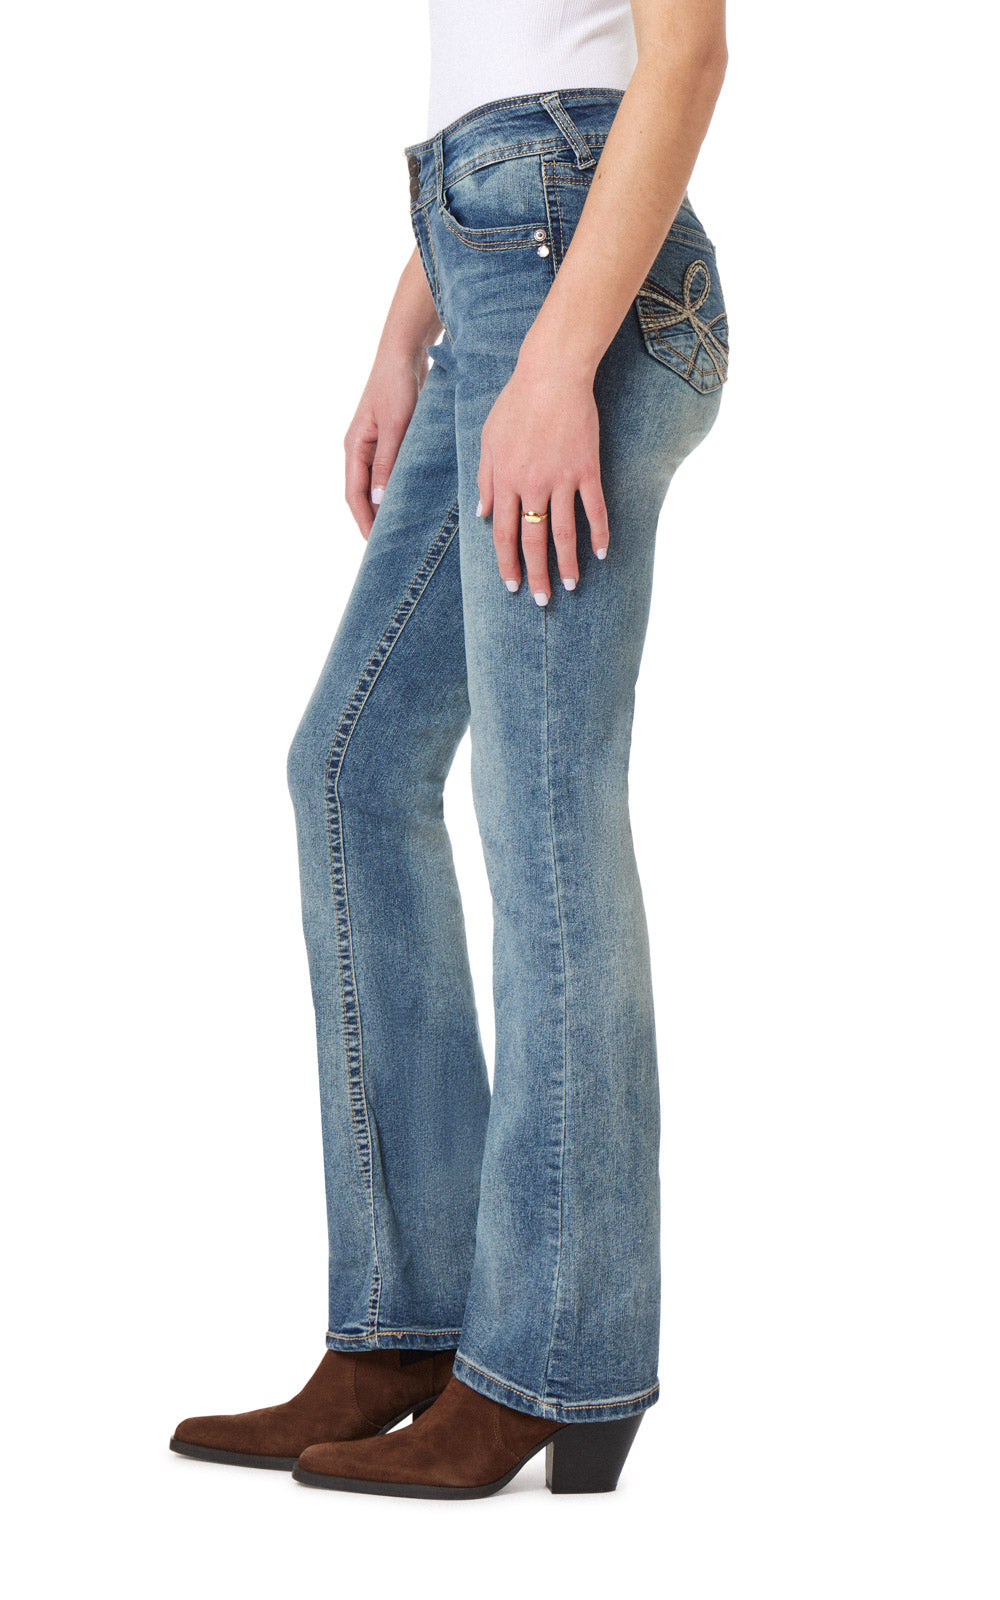 Calça - Curvy Stretch Bootleg Flare Jean